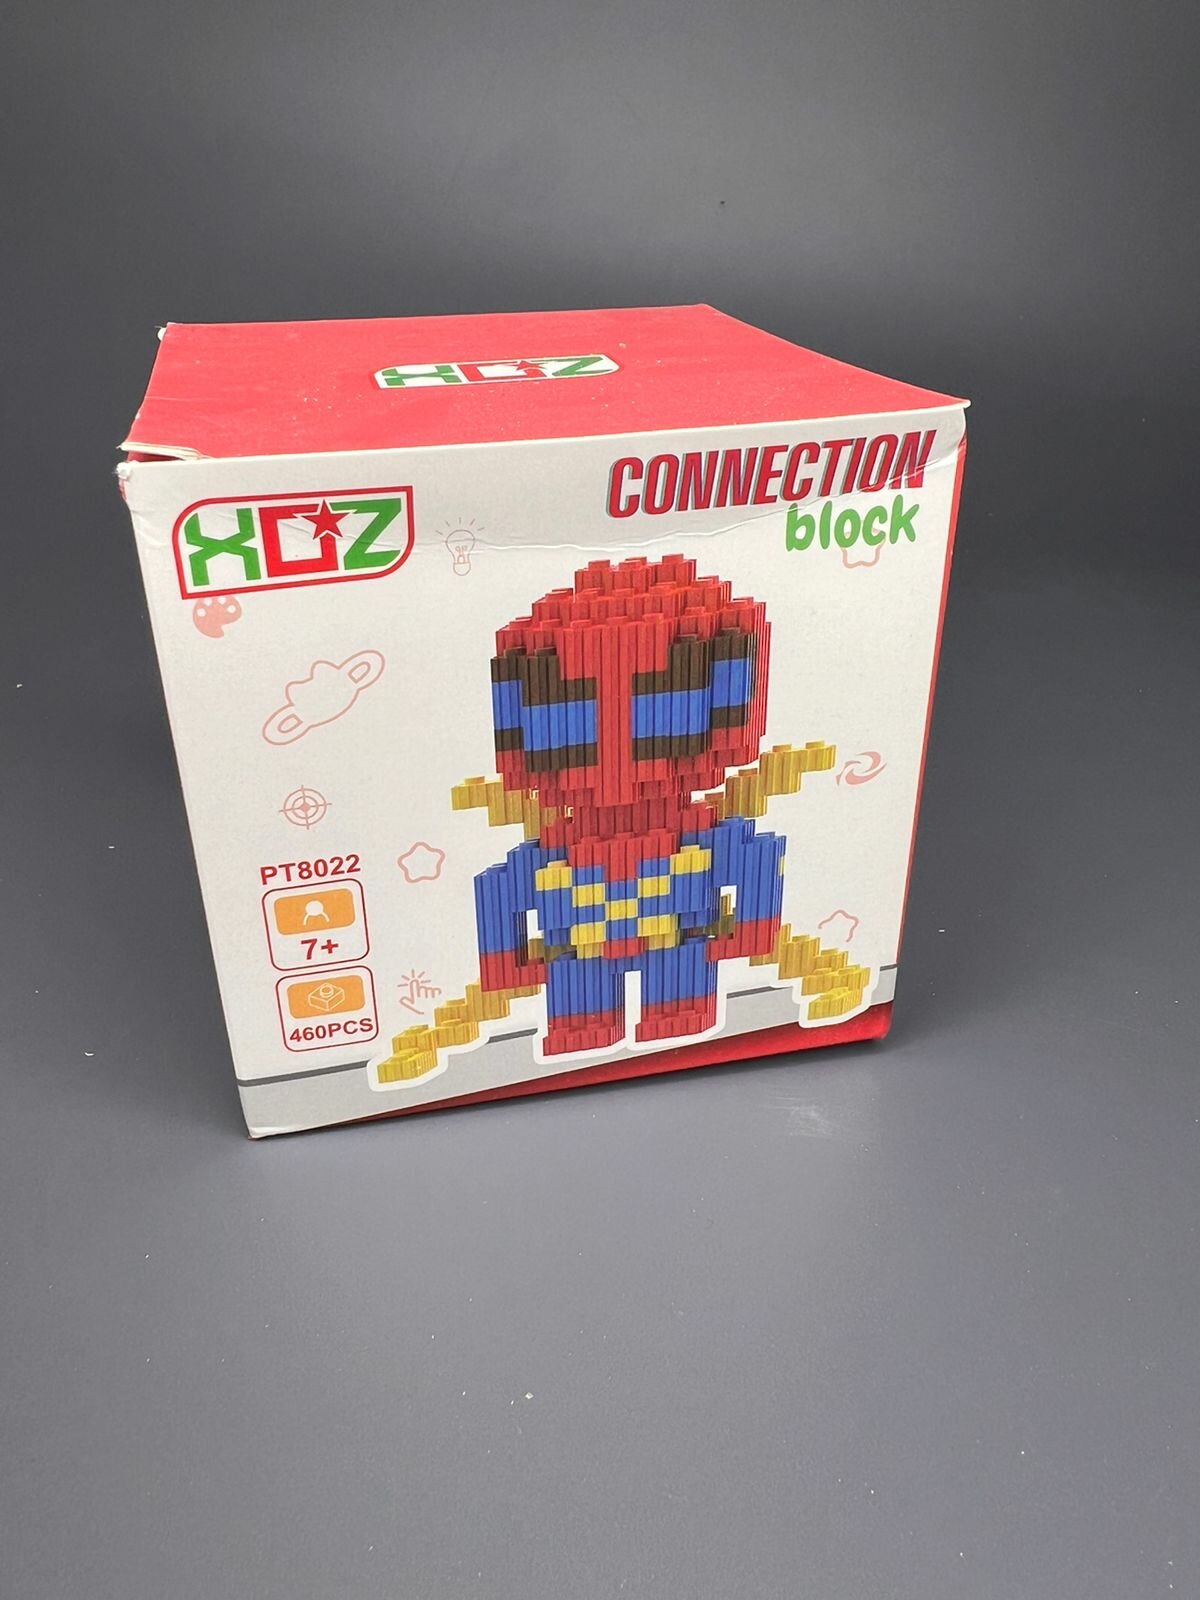 3д конструктор из миниблоков Человек Паук Spiderman с синими глазами